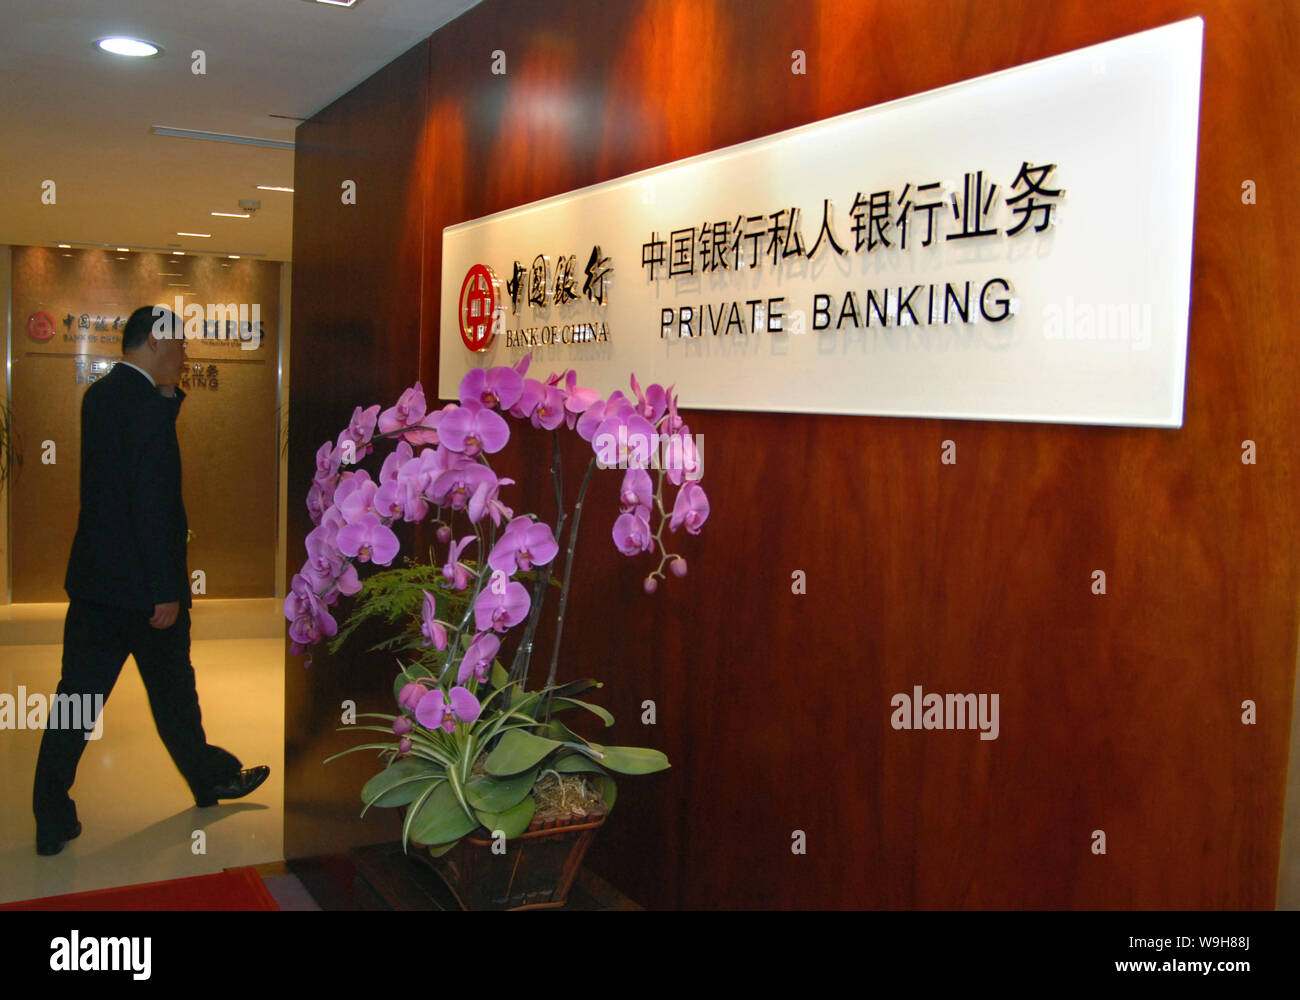 Un homme marche par une pancarte de Banque Privée Banque de Chine lors de la cérémonie d'ouverture des services de banque privée par la Banque de Chine (BOC) et la Roya Banque D'Images